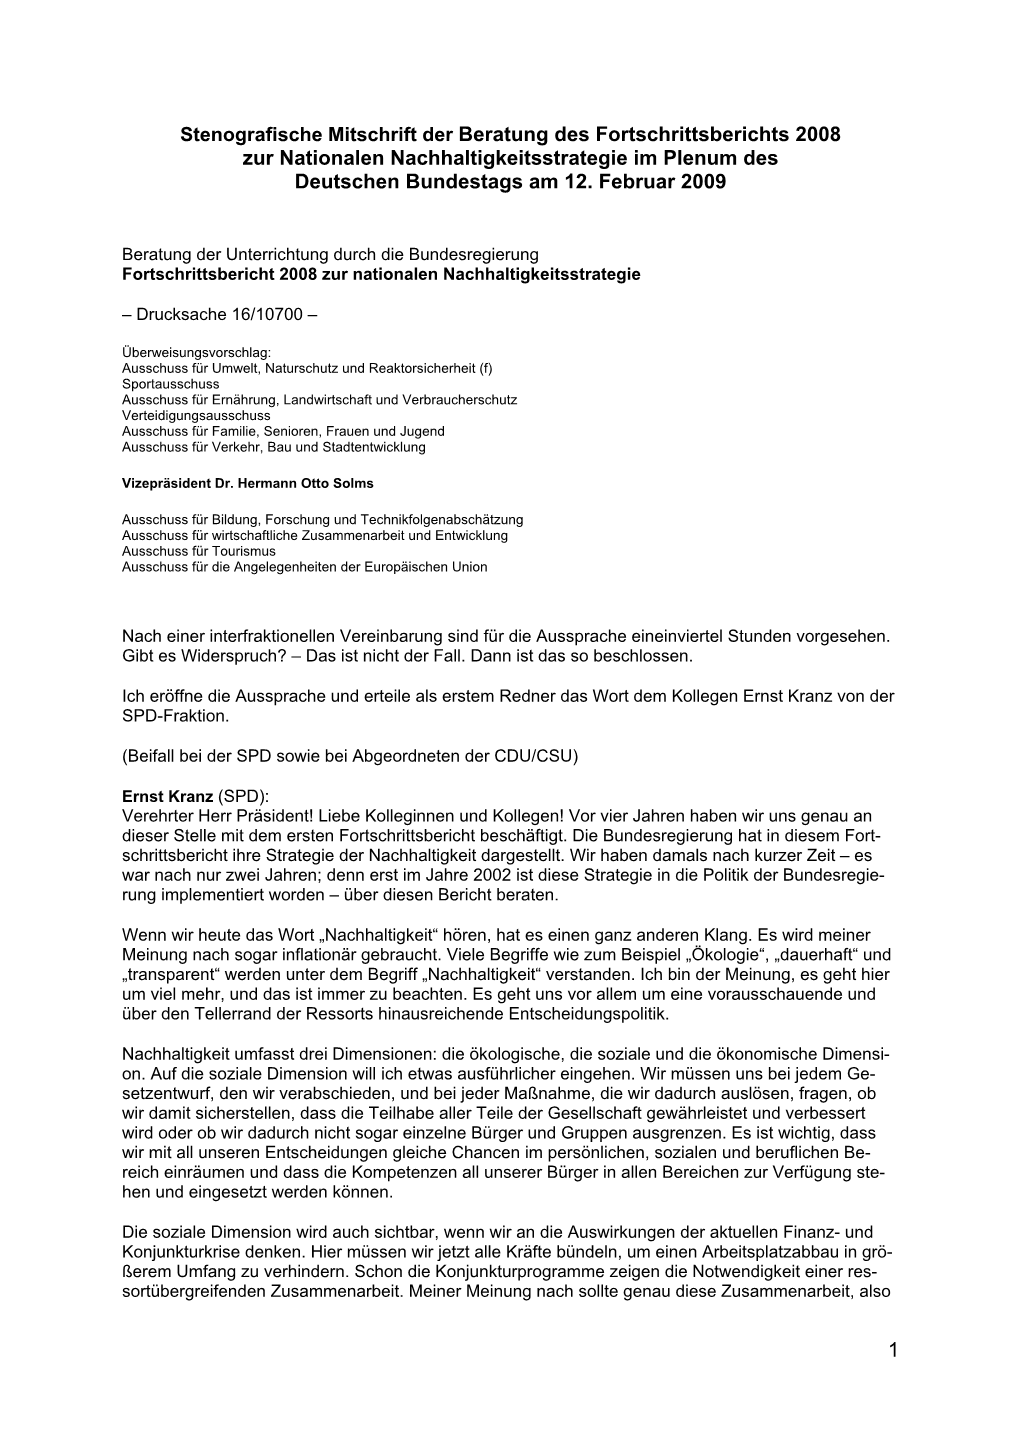 Beratung Des Fortschrittsberichts 2008 Zur Nationalen Nachhaltigkeitsstrategie Im Plenum Des Deutschen Bundestags Am 12